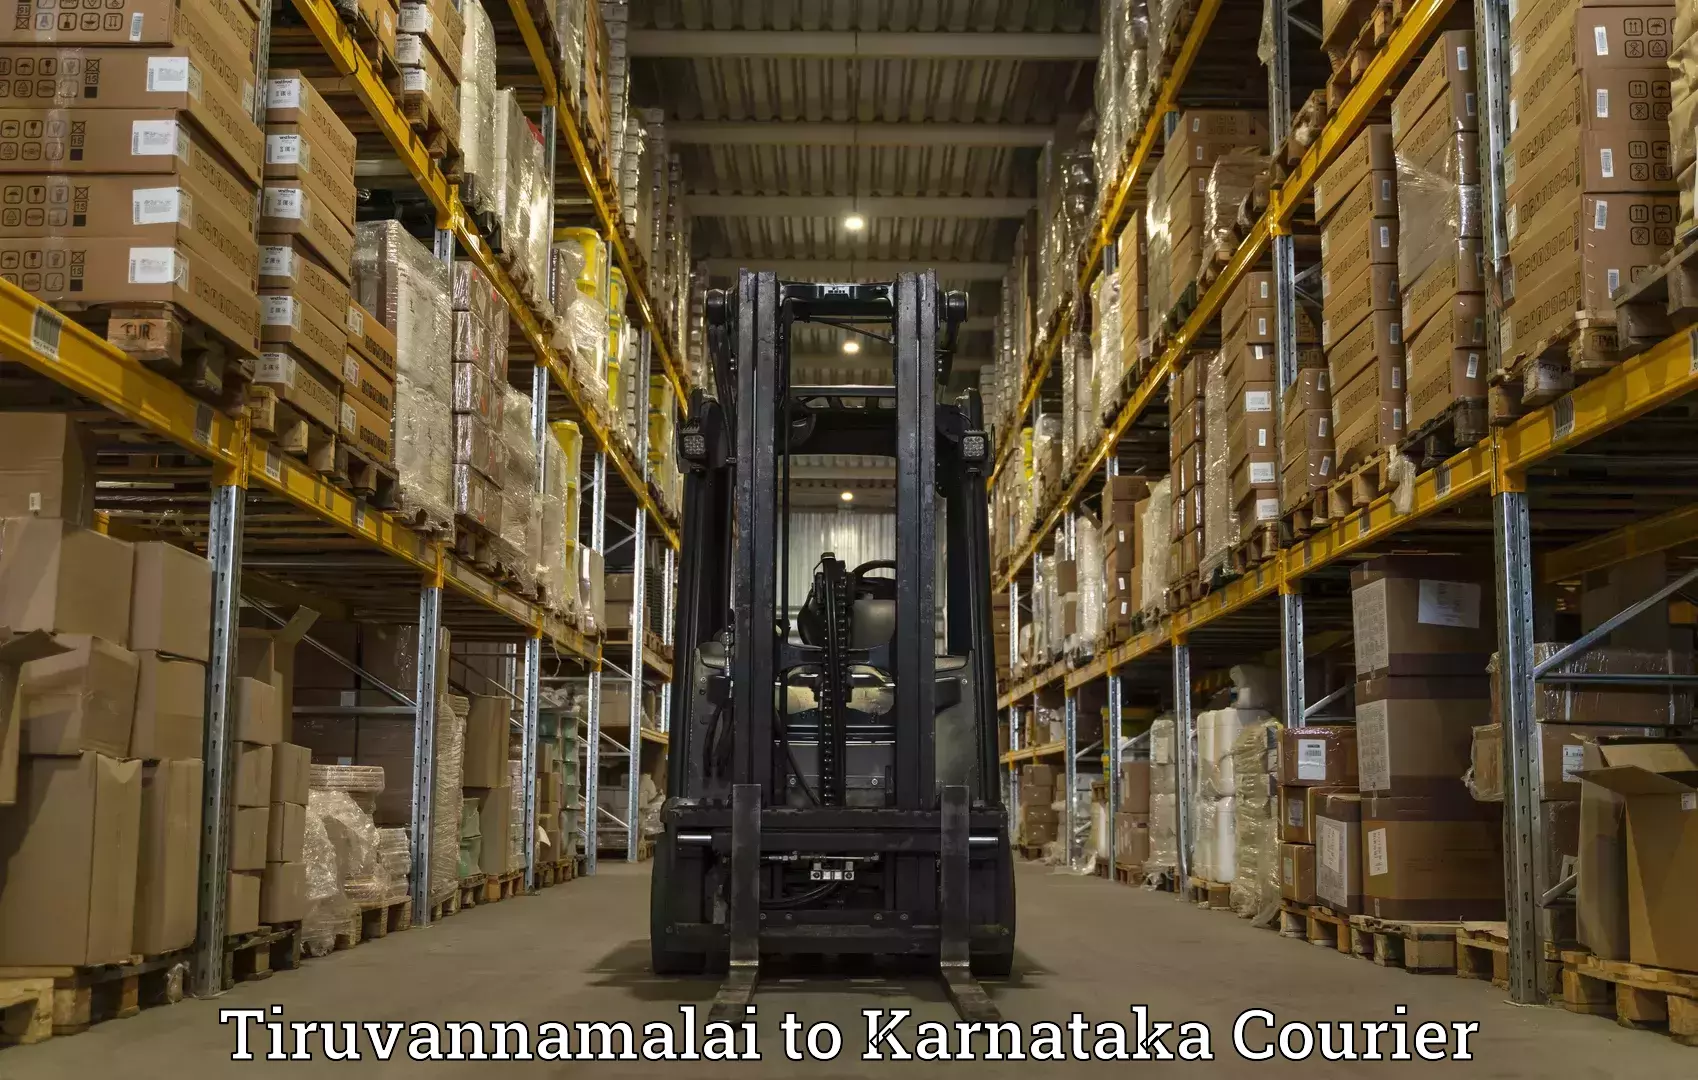 High-priority parcel service Tiruvannamalai to Chintamani Kolar